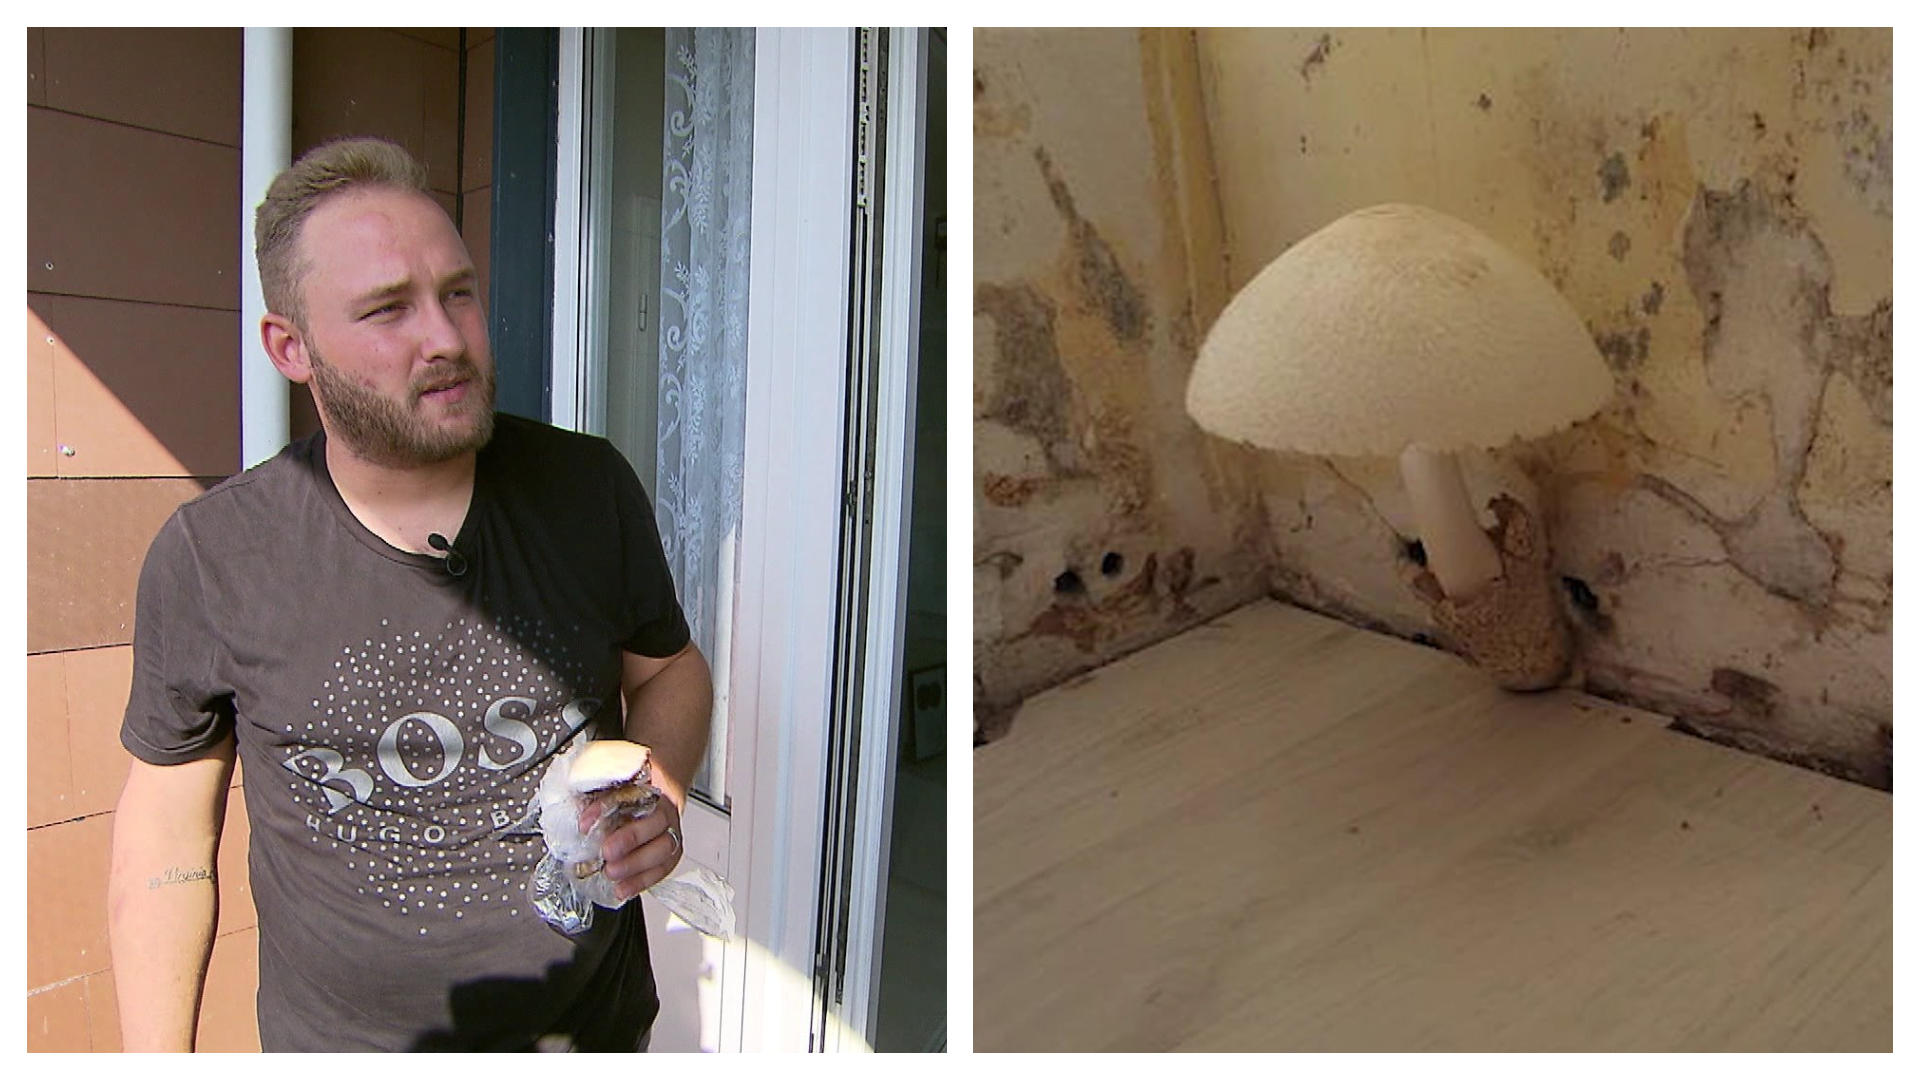 Keluarga itu datang dari liburan - dan mereka menderita jamur di apartemen yang sangat pengap di Cologne